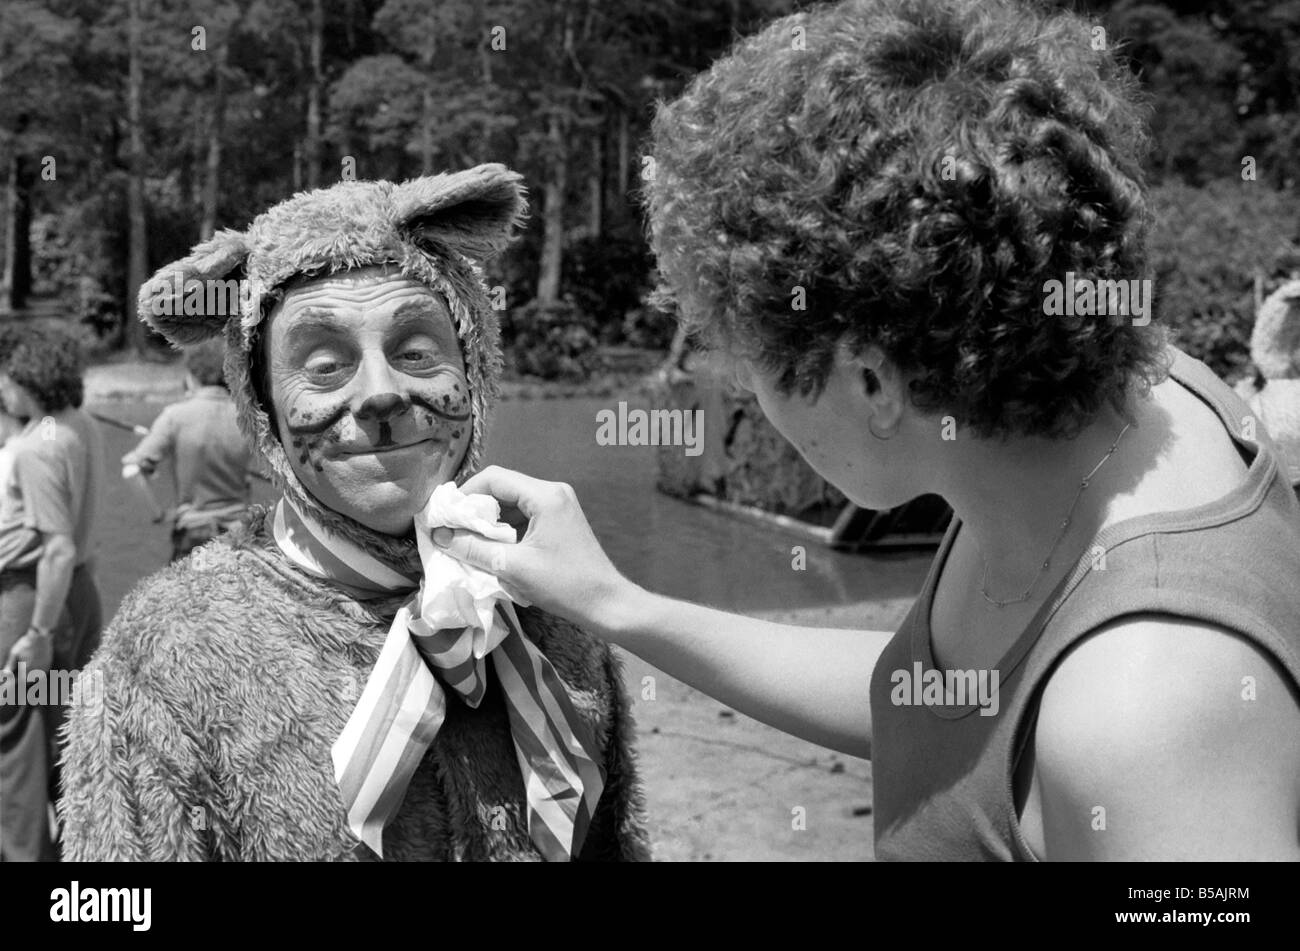 Le tournage de It Ain't Half Hot Mum, à Hawley Lake, Farnborough, dans le Hampshire est Melvyn Hayes en costume. Juin 1980 Banque D'Images